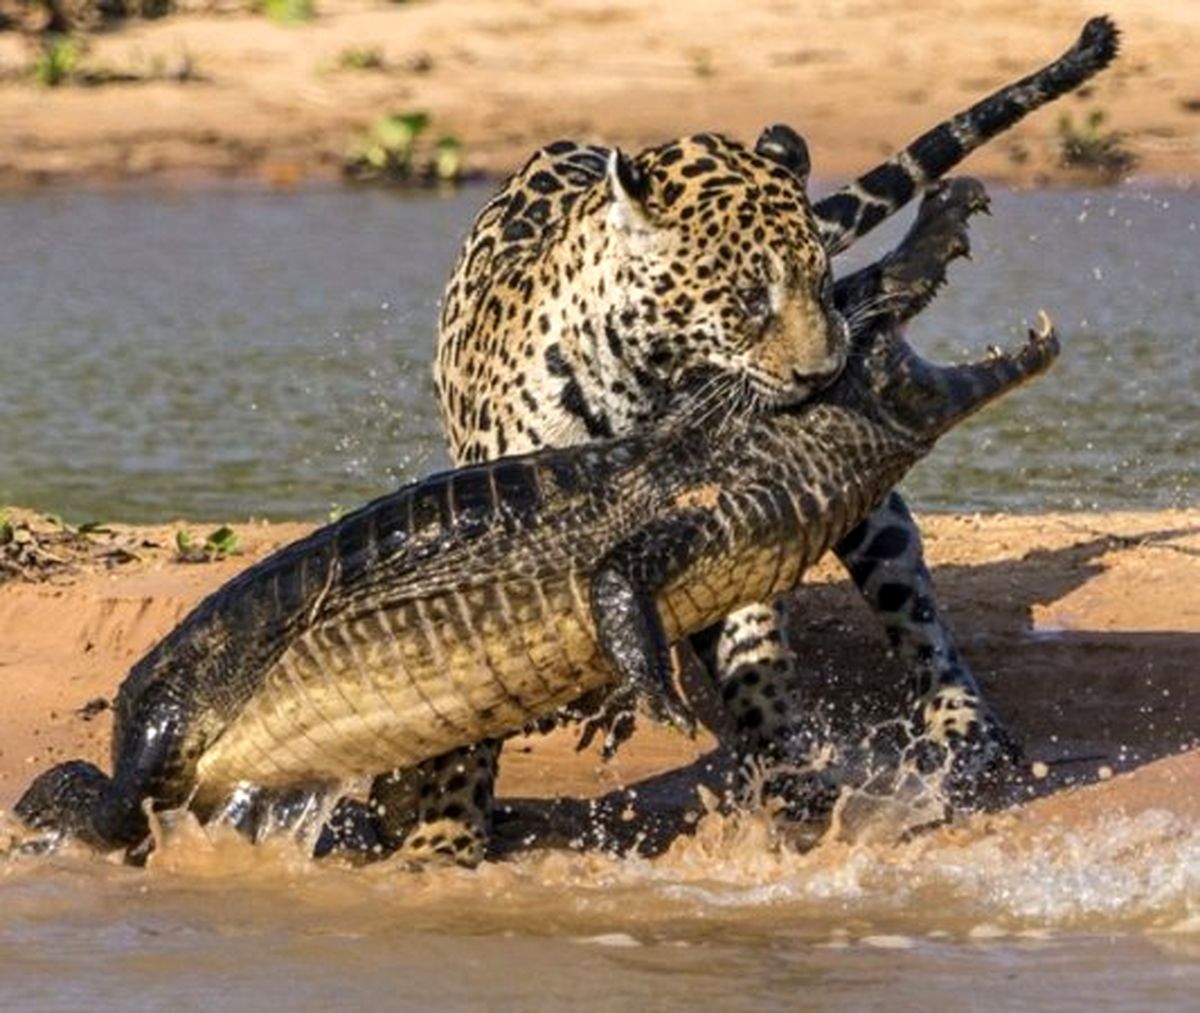 تصاویری حیرت انگیز از بلعیدن تمساح توسط یک پلنگ!